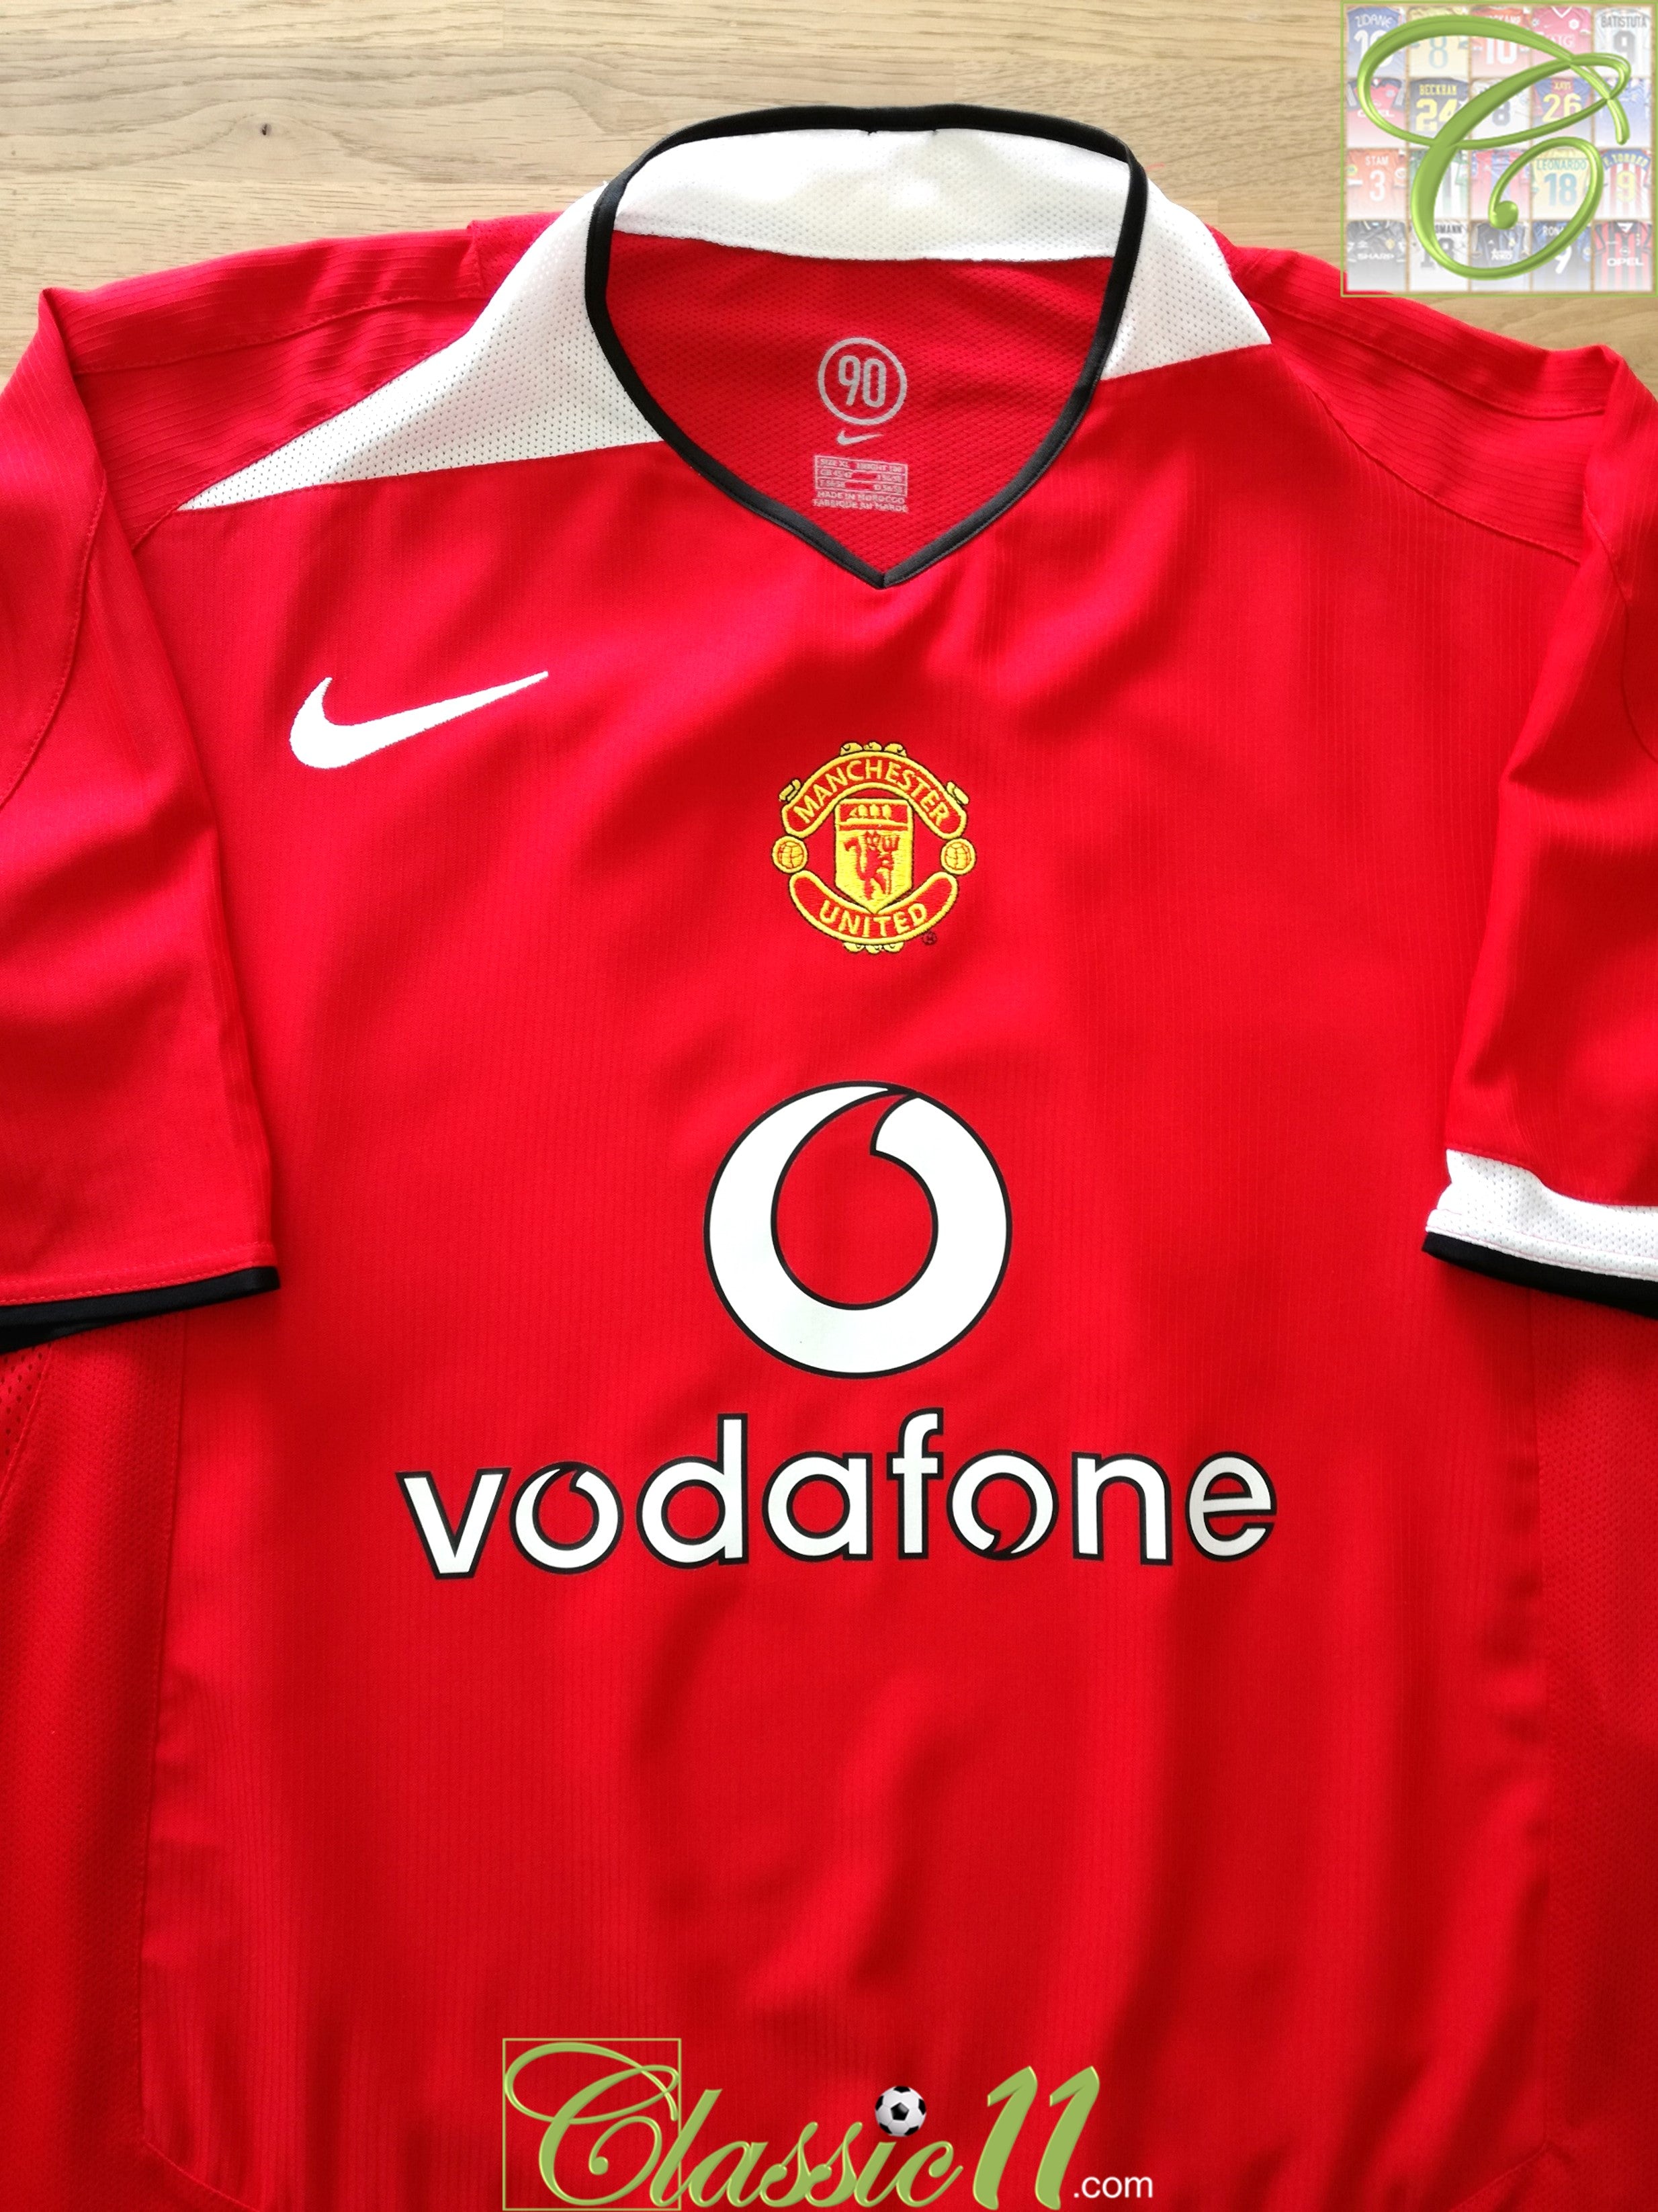 manchester united 2004 kit